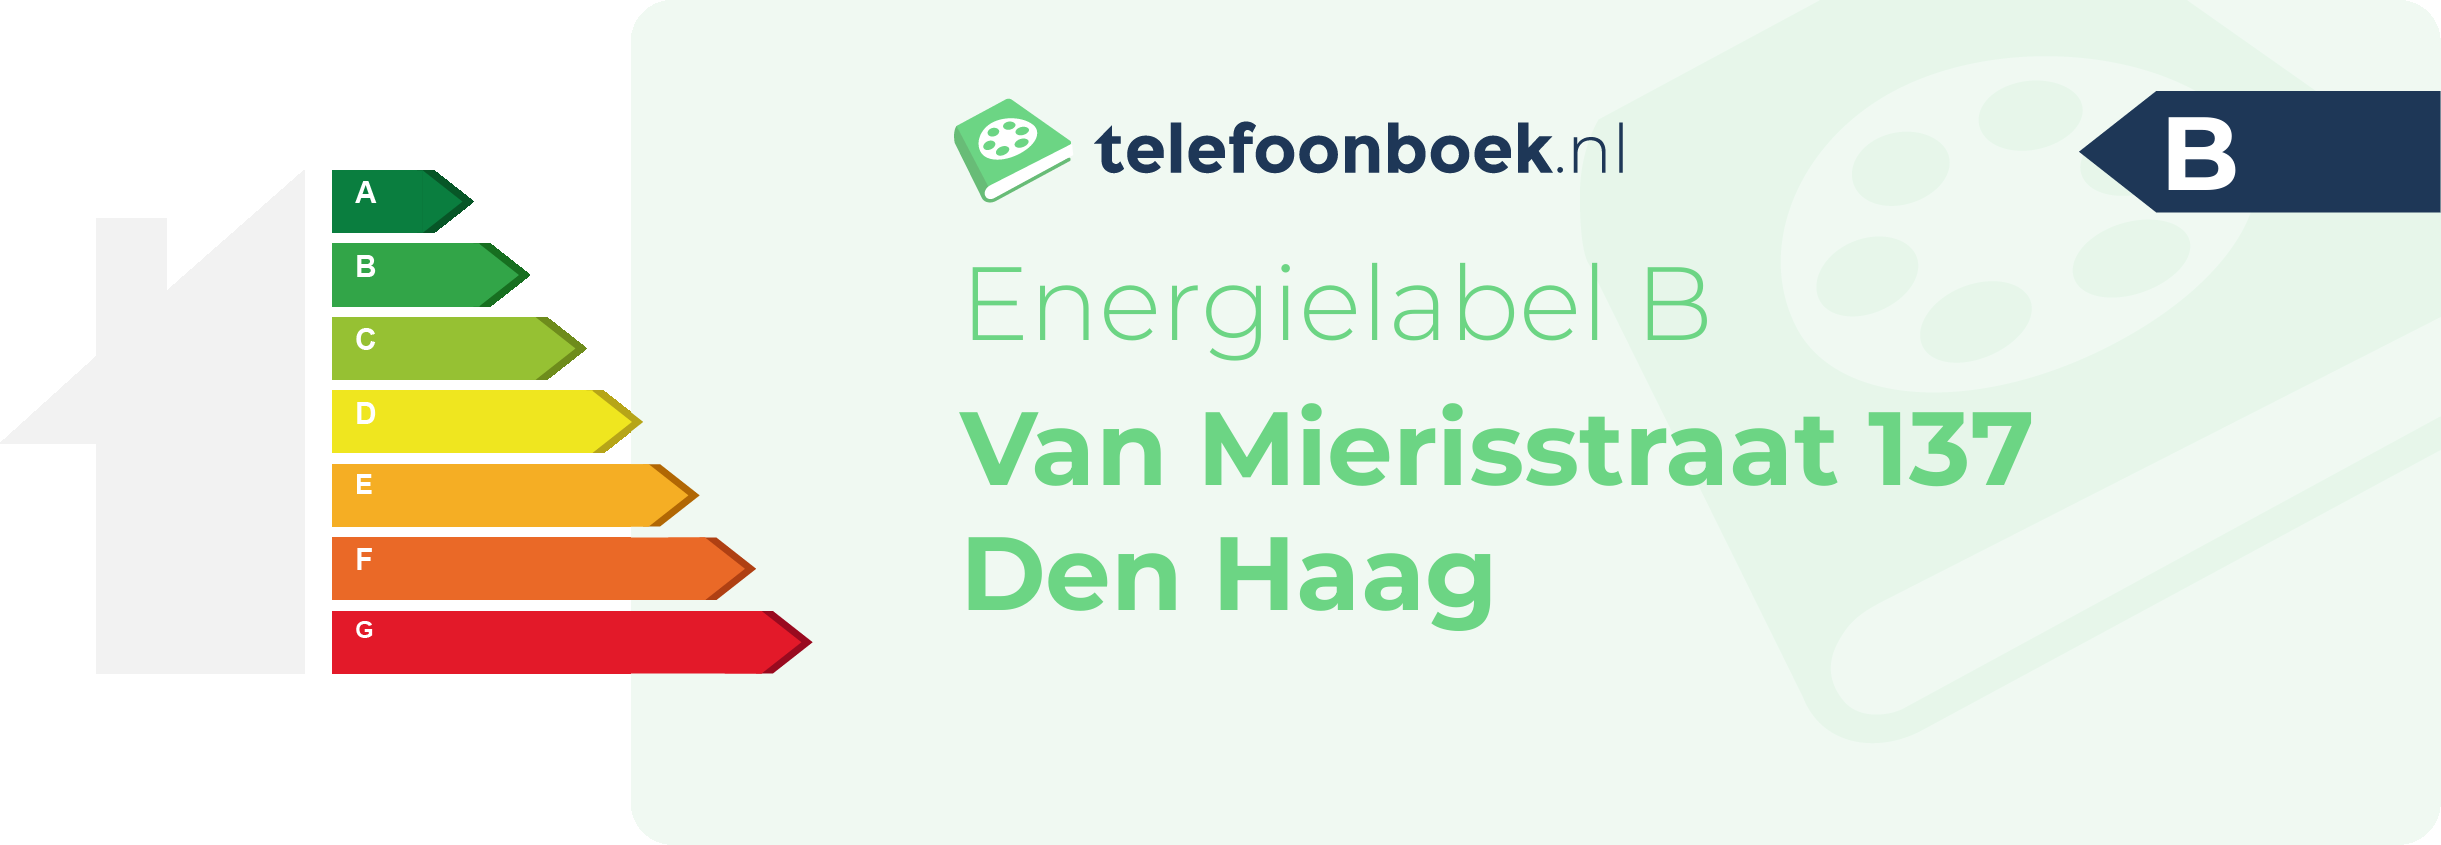 Energielabel Van Mierisstraat 137 Den Haag